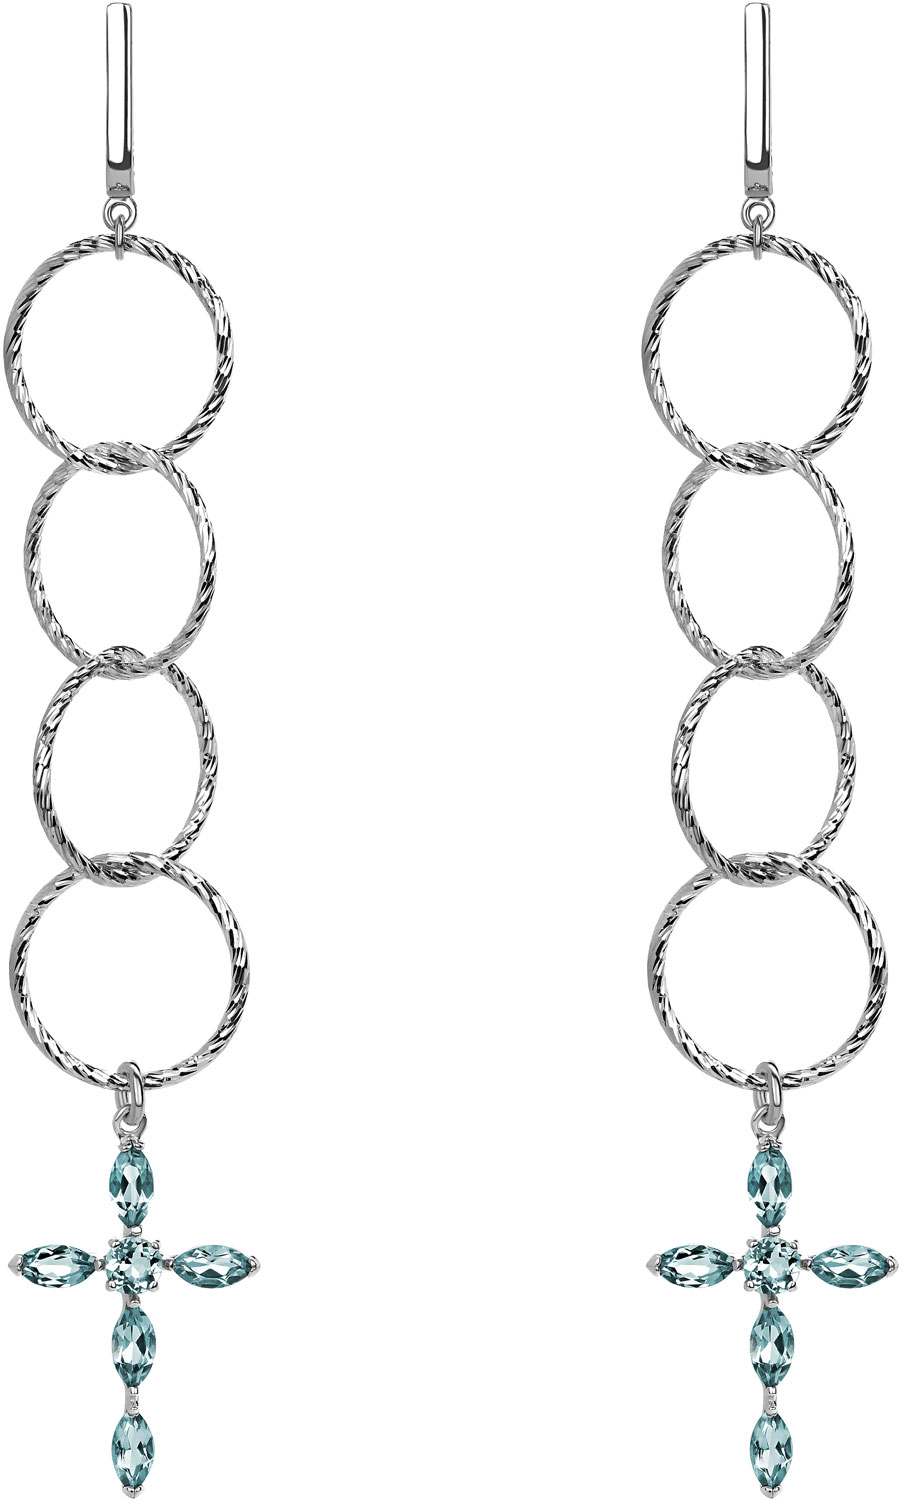 Серебряные длинные серьги круглые с подвесками Yana  Jewellery 117/02W-topaz-sky с топазами